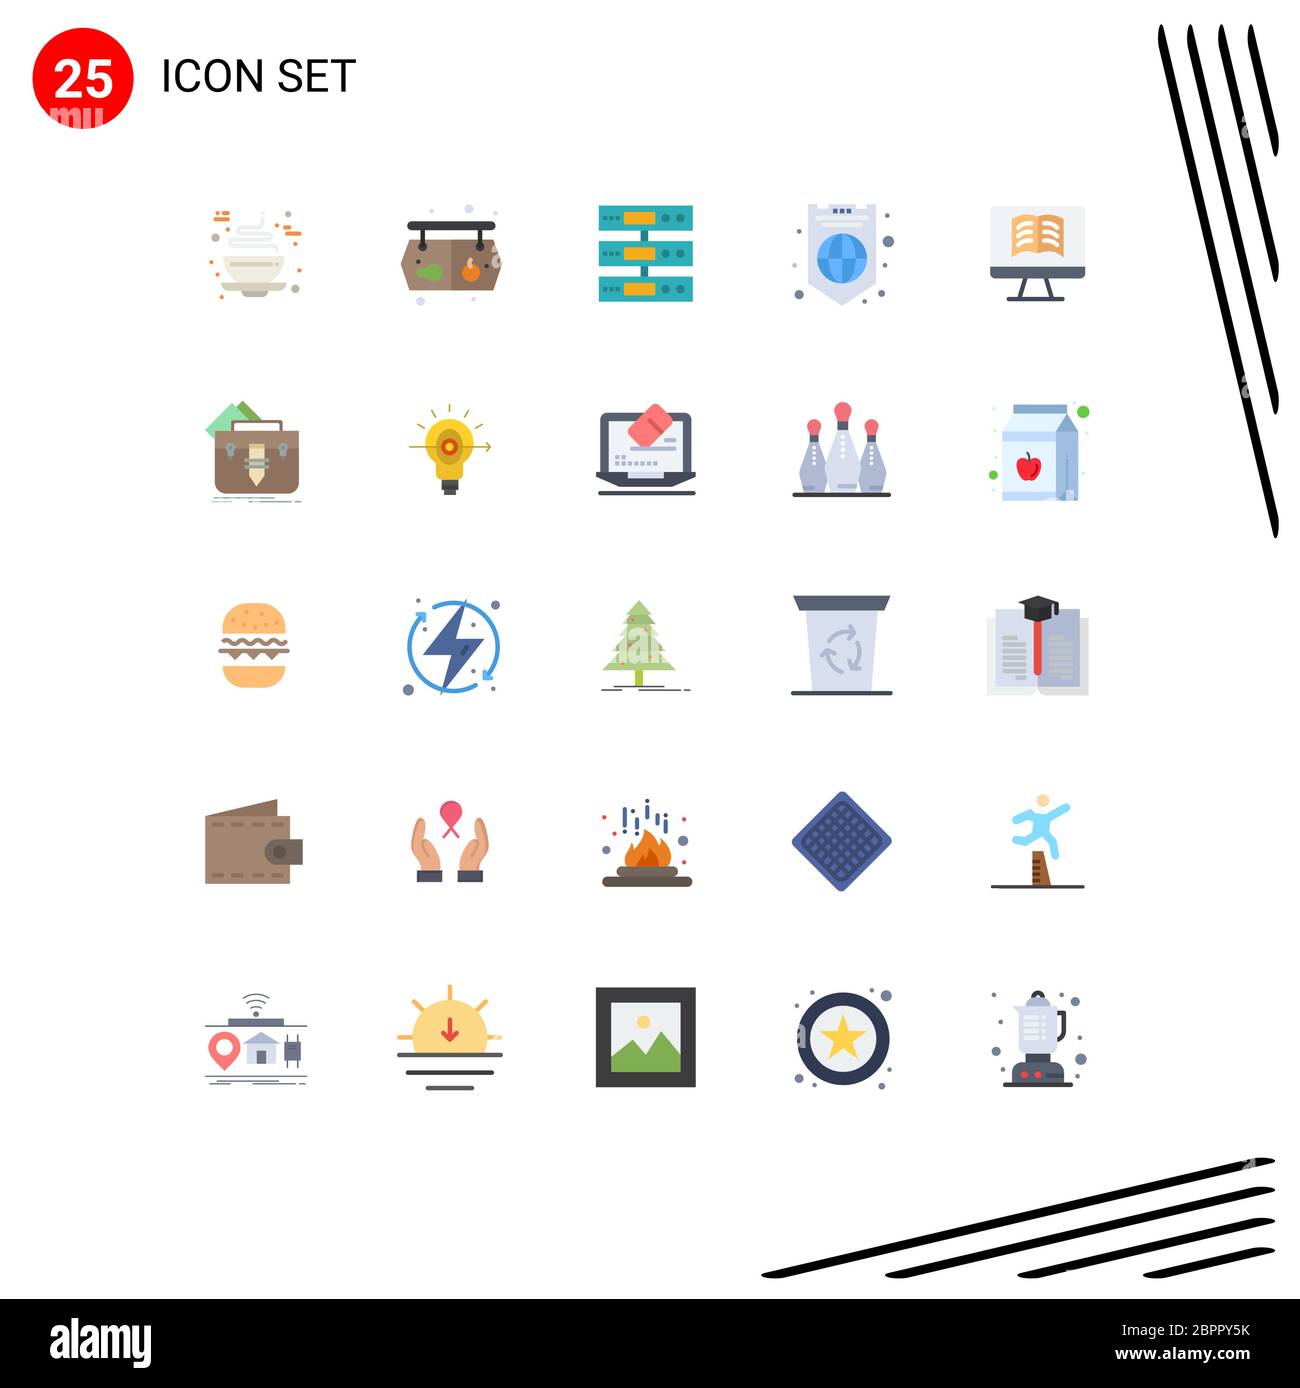 Moderno set di 25 colori piatti e simboli come computer, protezione, server, internet, file elementi di disegno vettoriale editabili Illustrazione Vettoriale